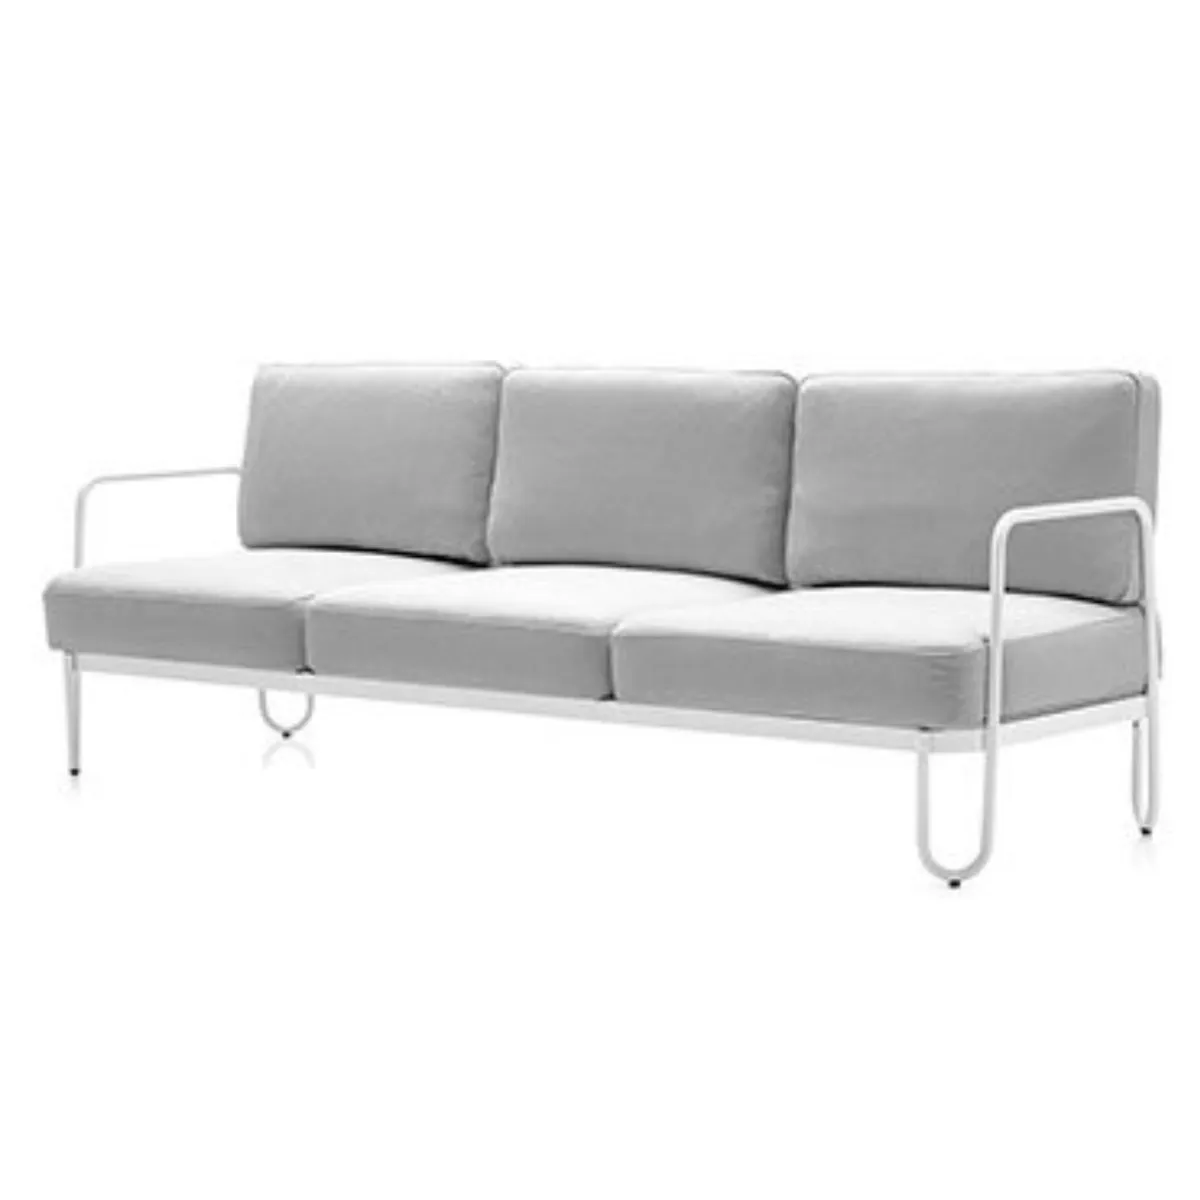 Stulle sofa 1